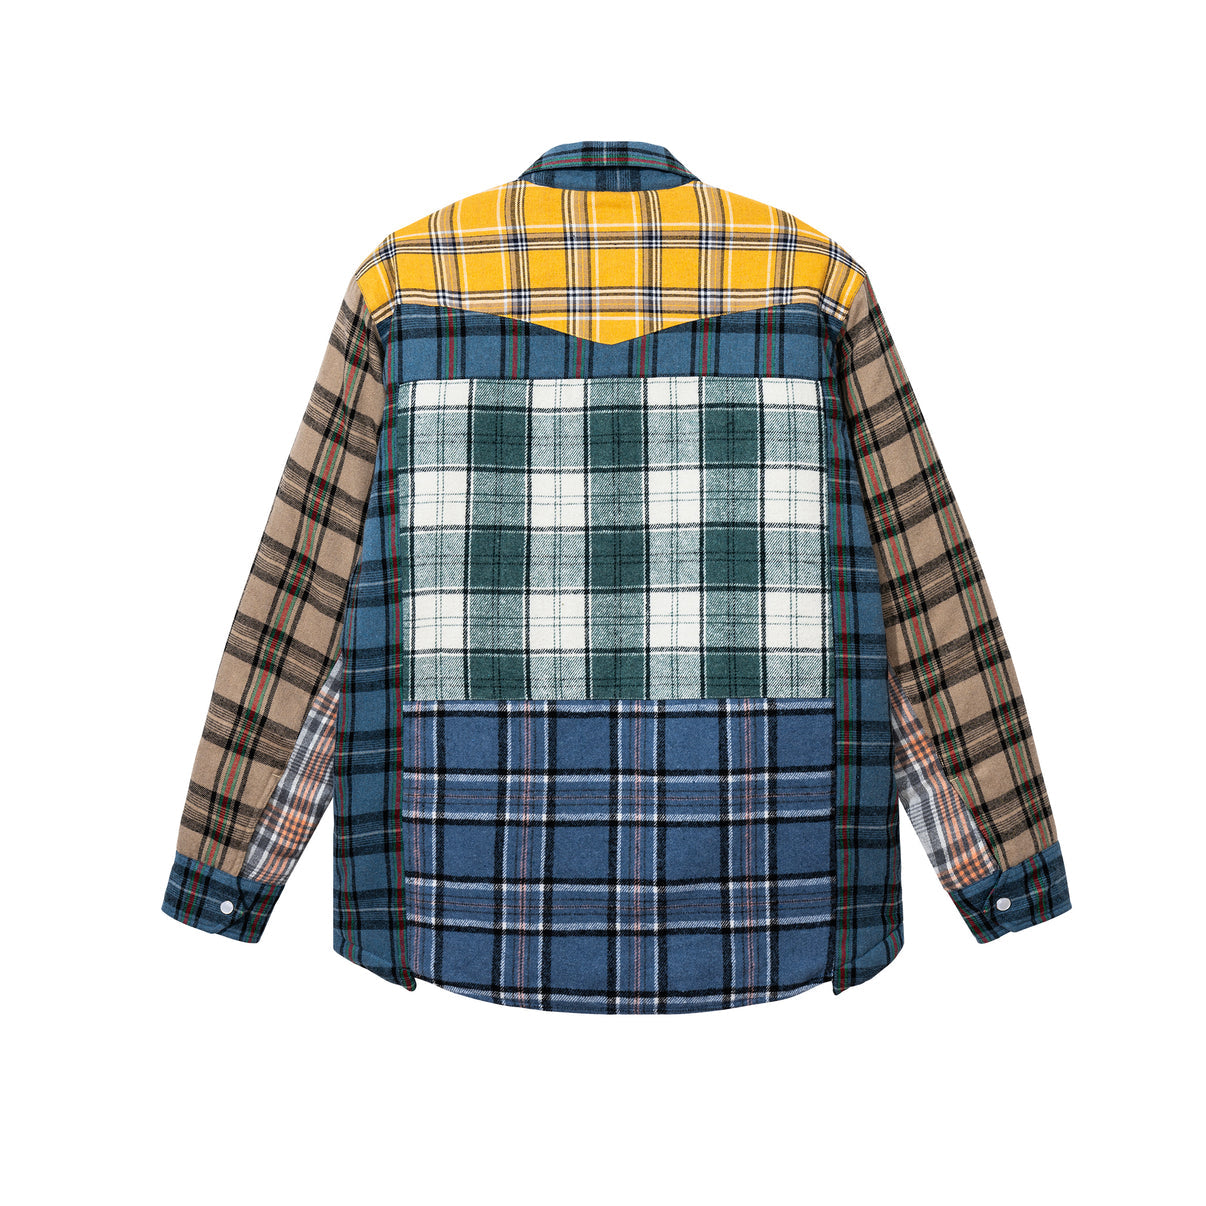 Market - Thrift Flannel LS Shirt - Multi